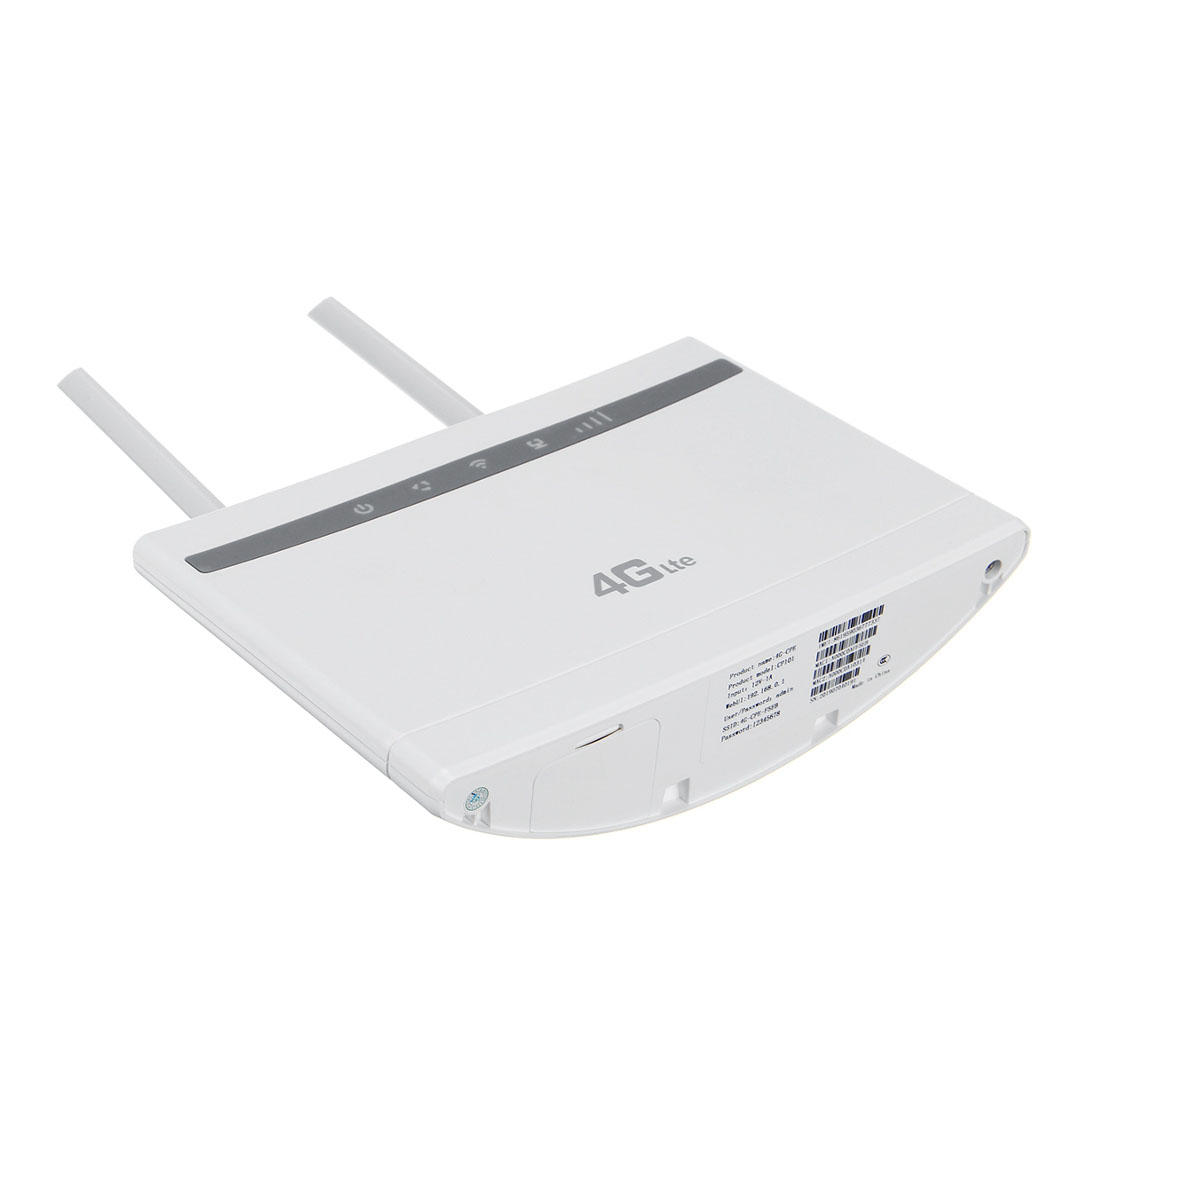 

Беспроводной маршрутизатор WIFI 300 Мбит / с 3G 4G LTE CPE Модем маршрутизатора WIFI 300 Мбит / с со стандартным гнездом